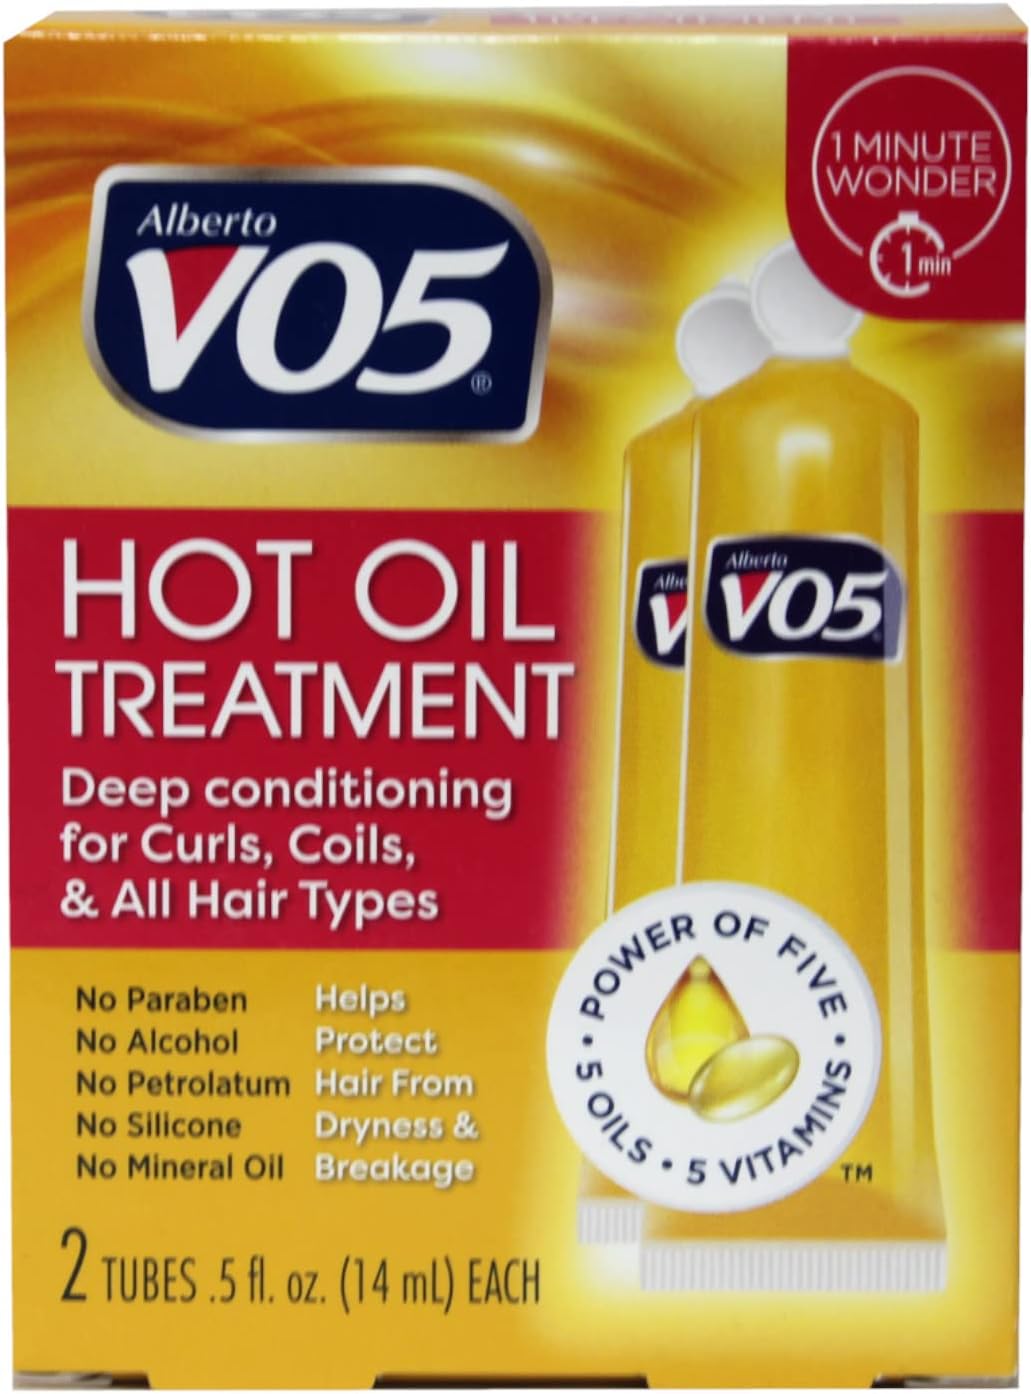 VO5 Hot Oil Therapy, 1 Oz